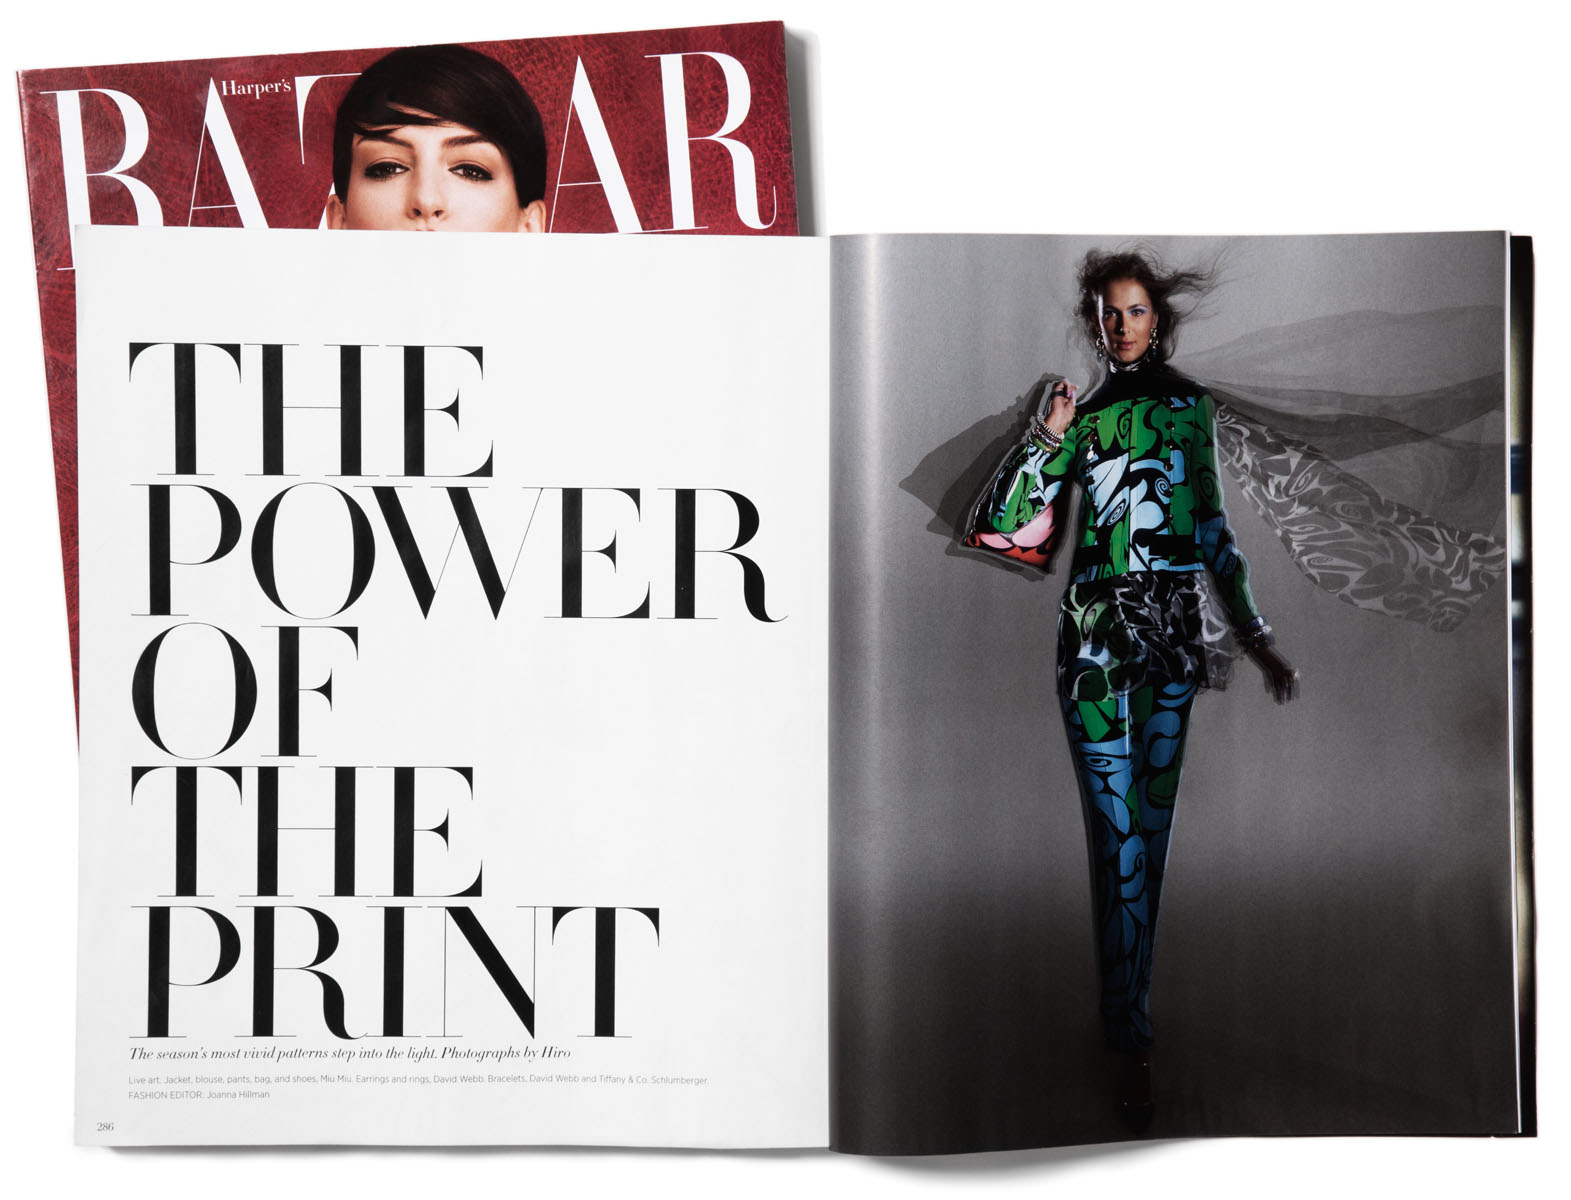 Harper's Bazaar, November 2014, Images by Hiro